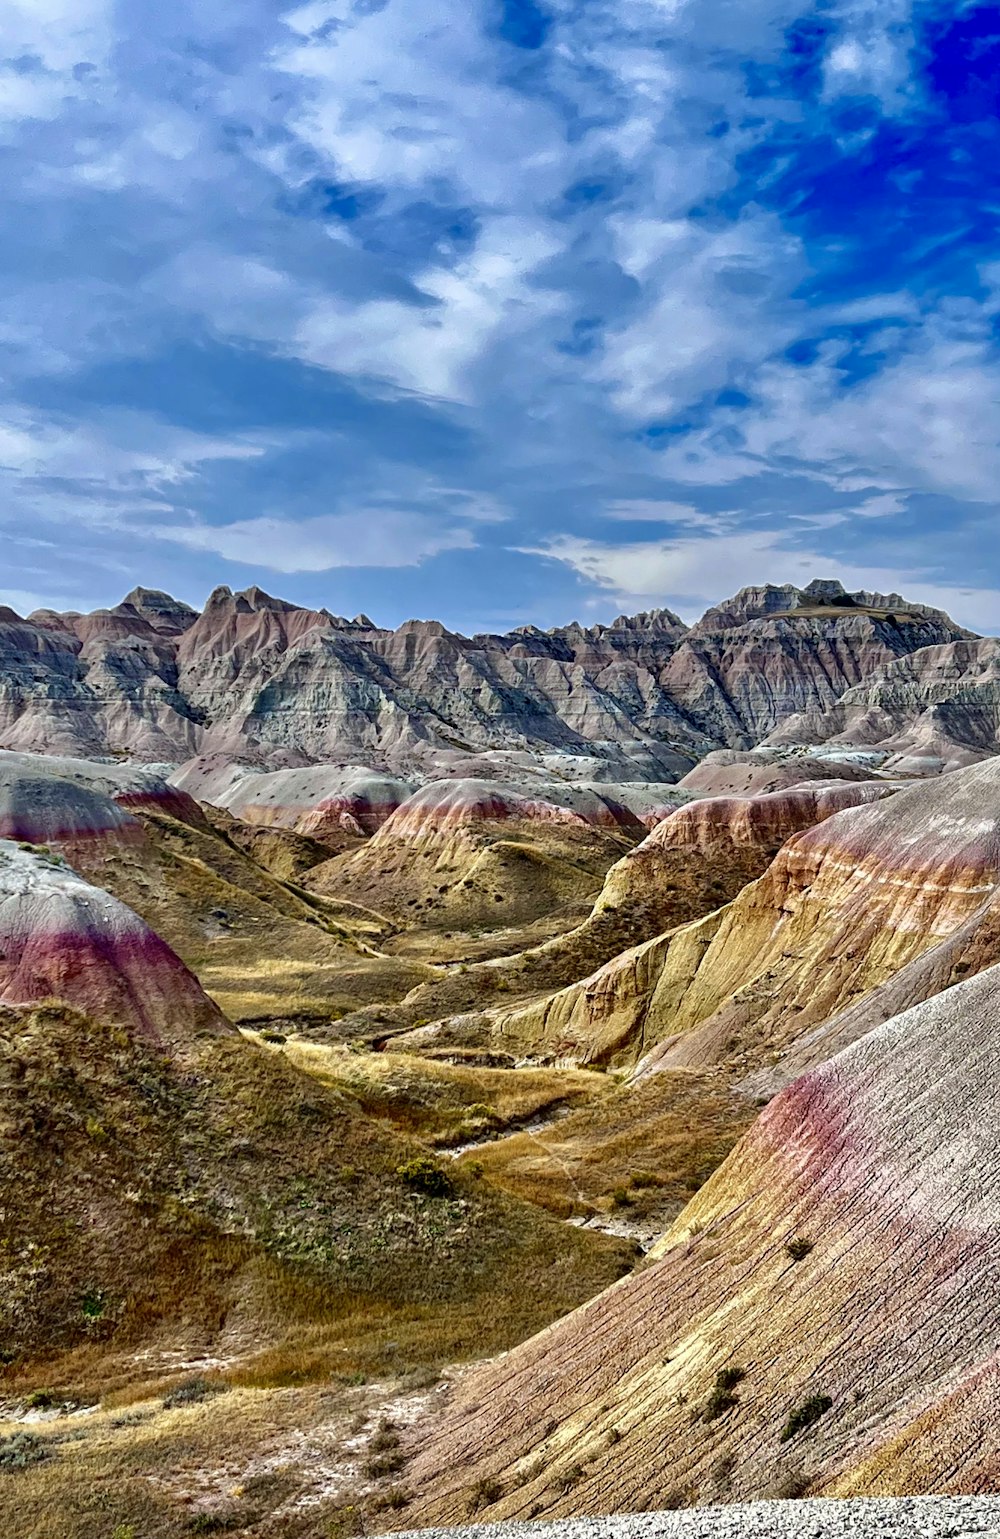 Una vista panoramica di una catena montuosa nel deserto